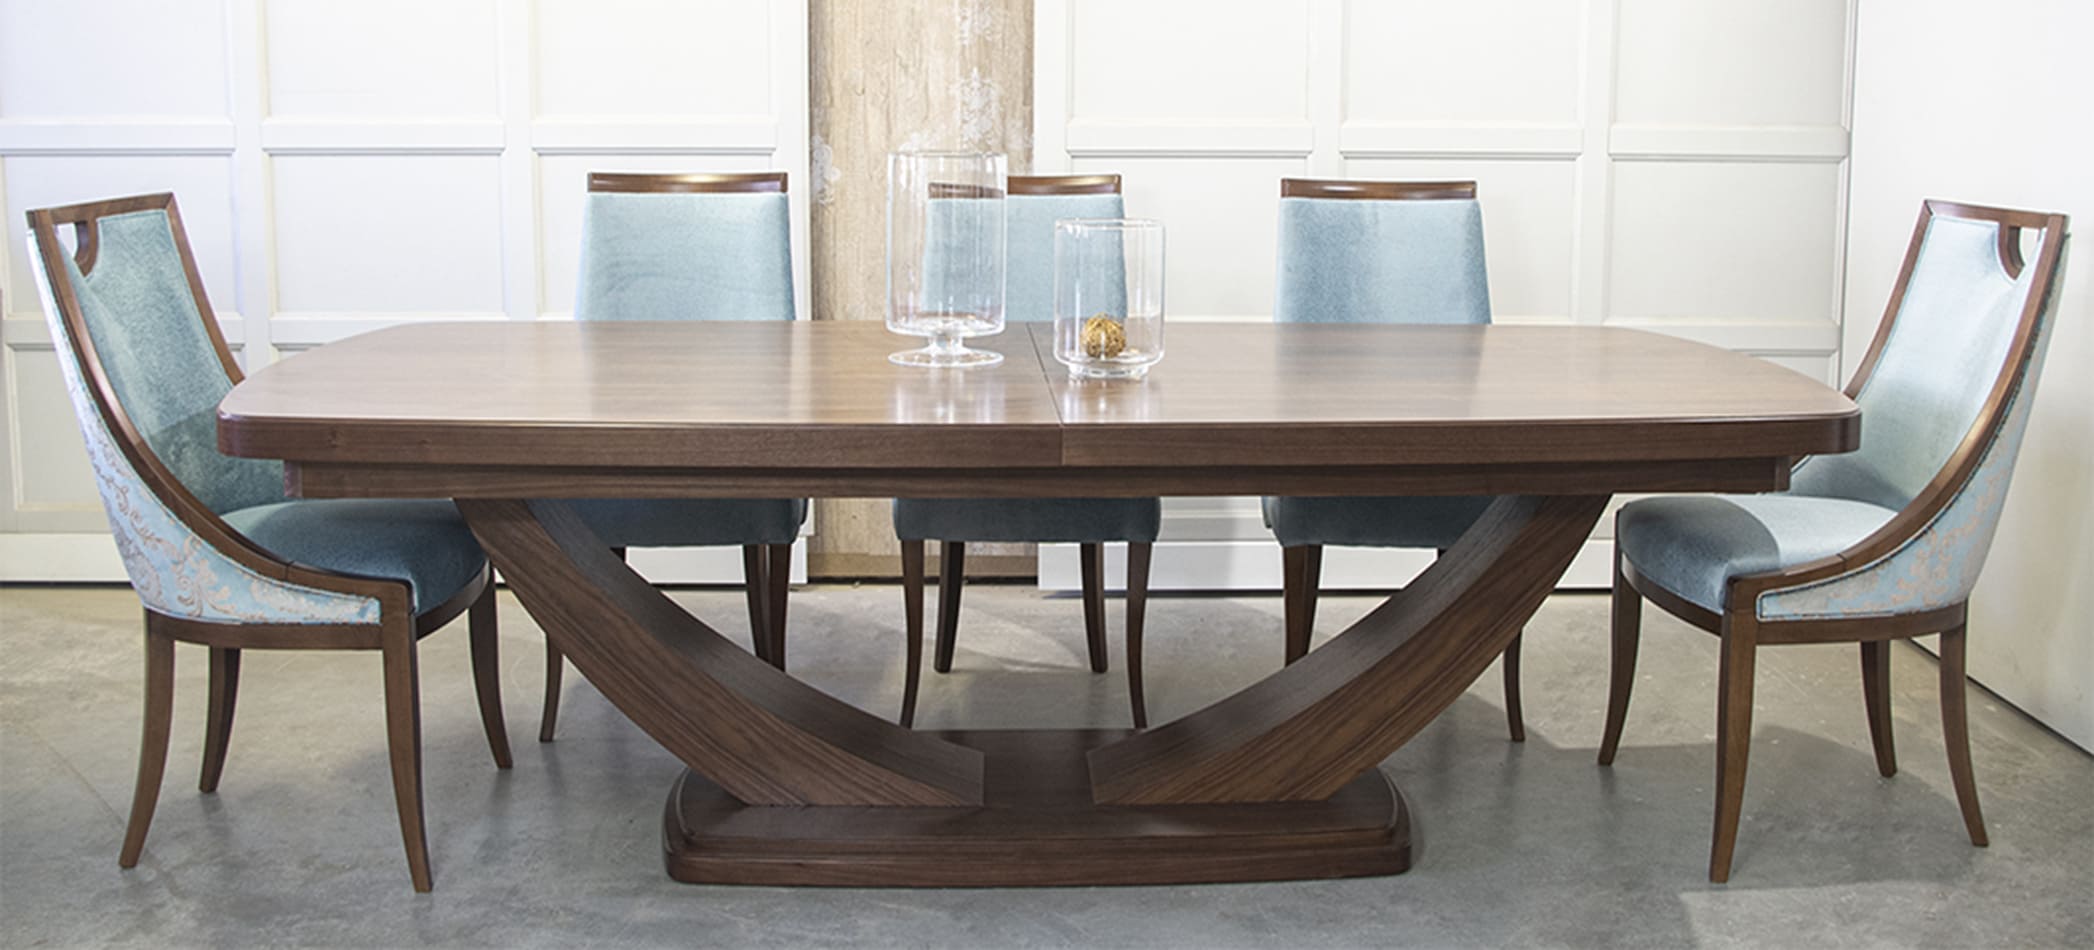 Meble Dobrodzień- duży stół rozkładany w stylu art deco na wymiar- stół na płozach- stół glamour